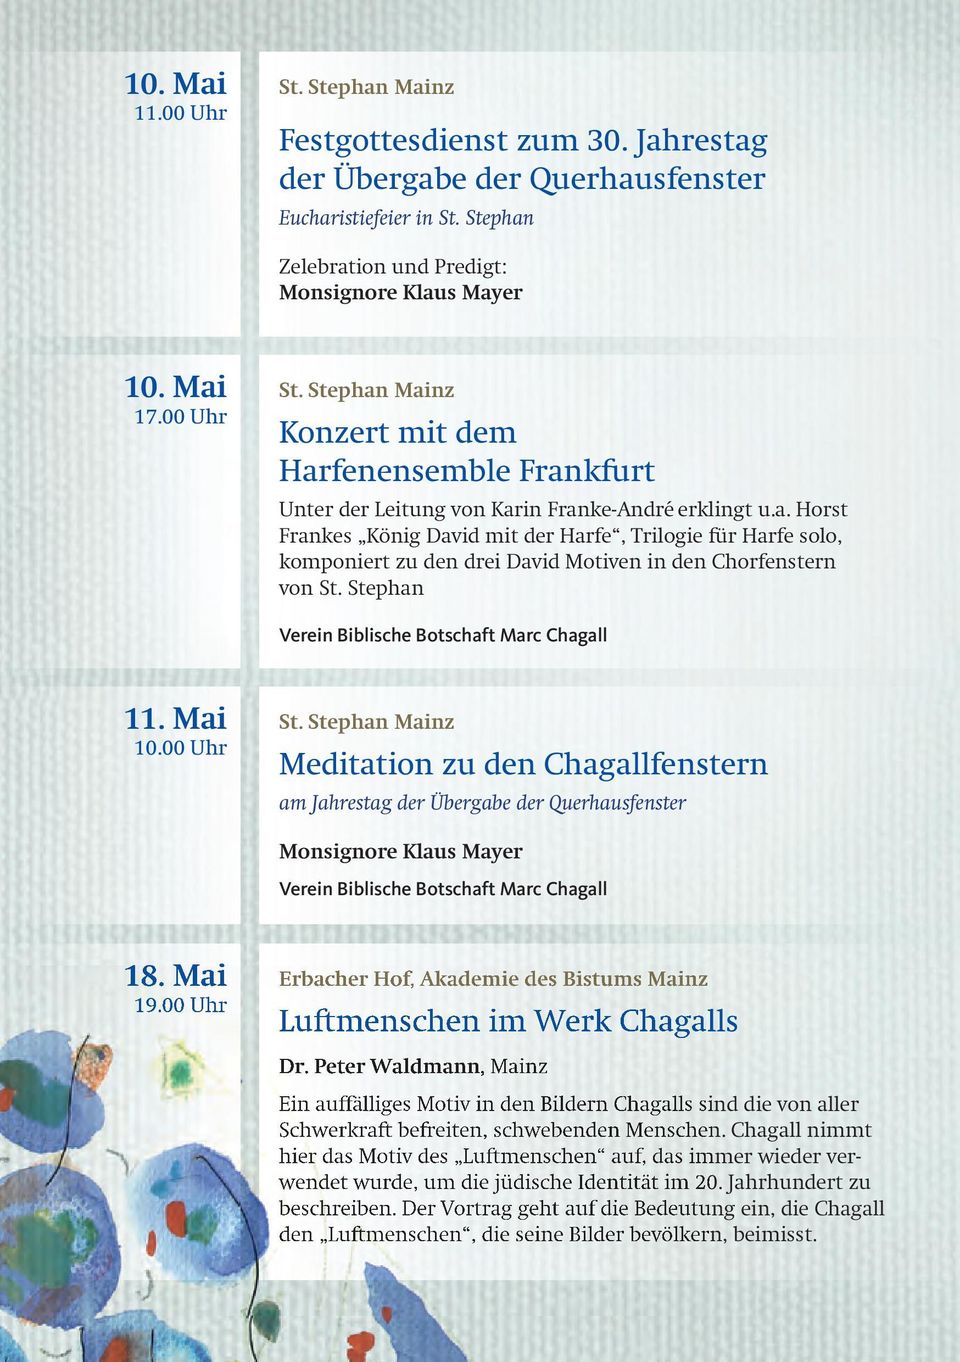 Stephan Verein Biblische Botschaft Marc Chagall 11. Mai 10.